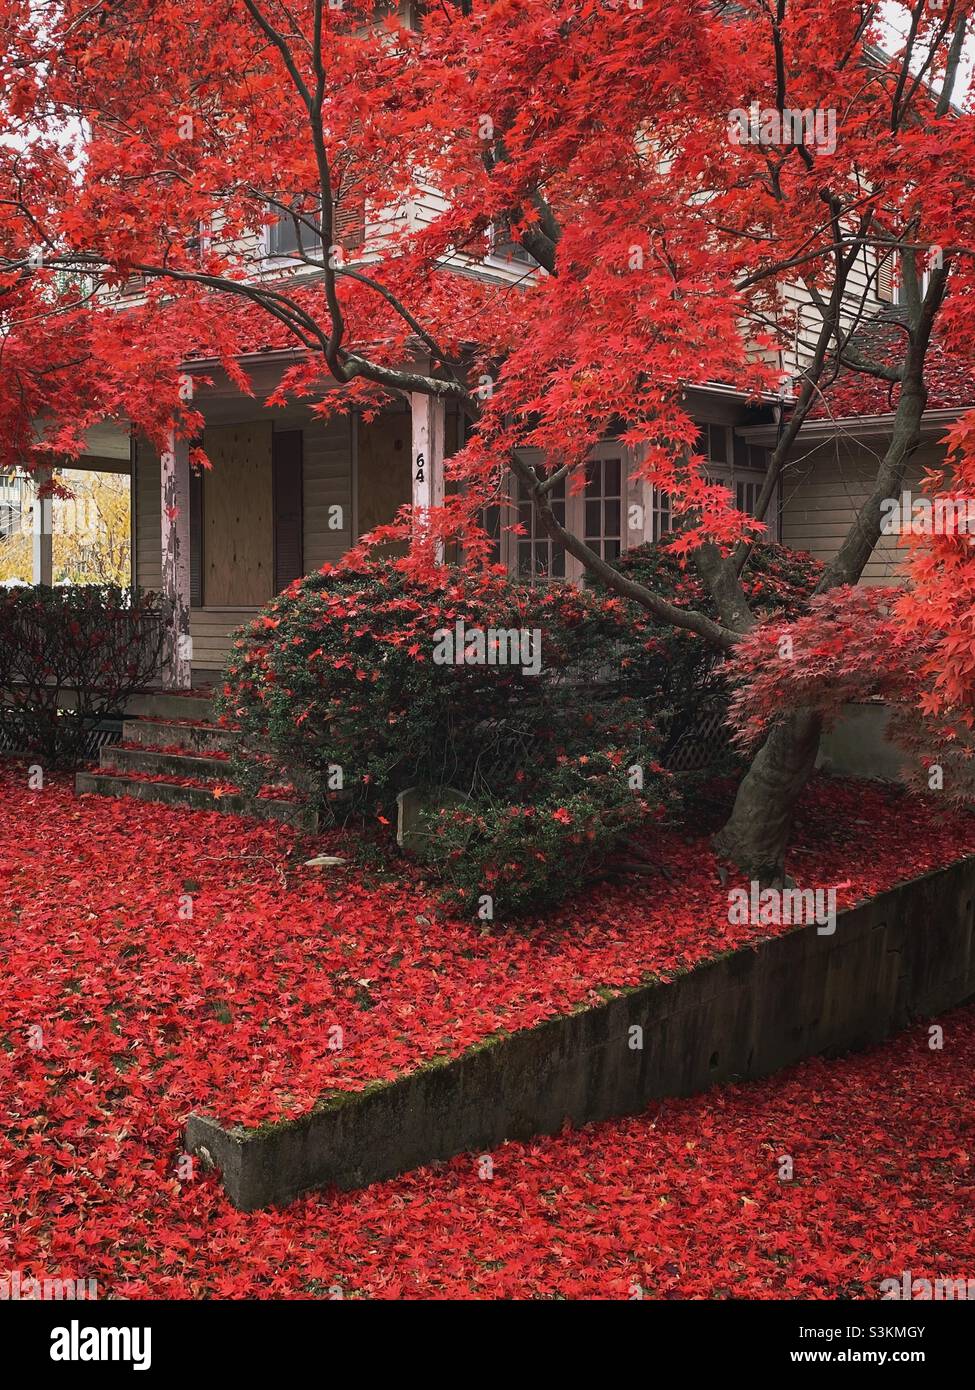 Le foglie rosse cadute da un albero di acero giapponese coprono il cortile anteriore di una casa nel New Jersey come una coperta. Foto Stock